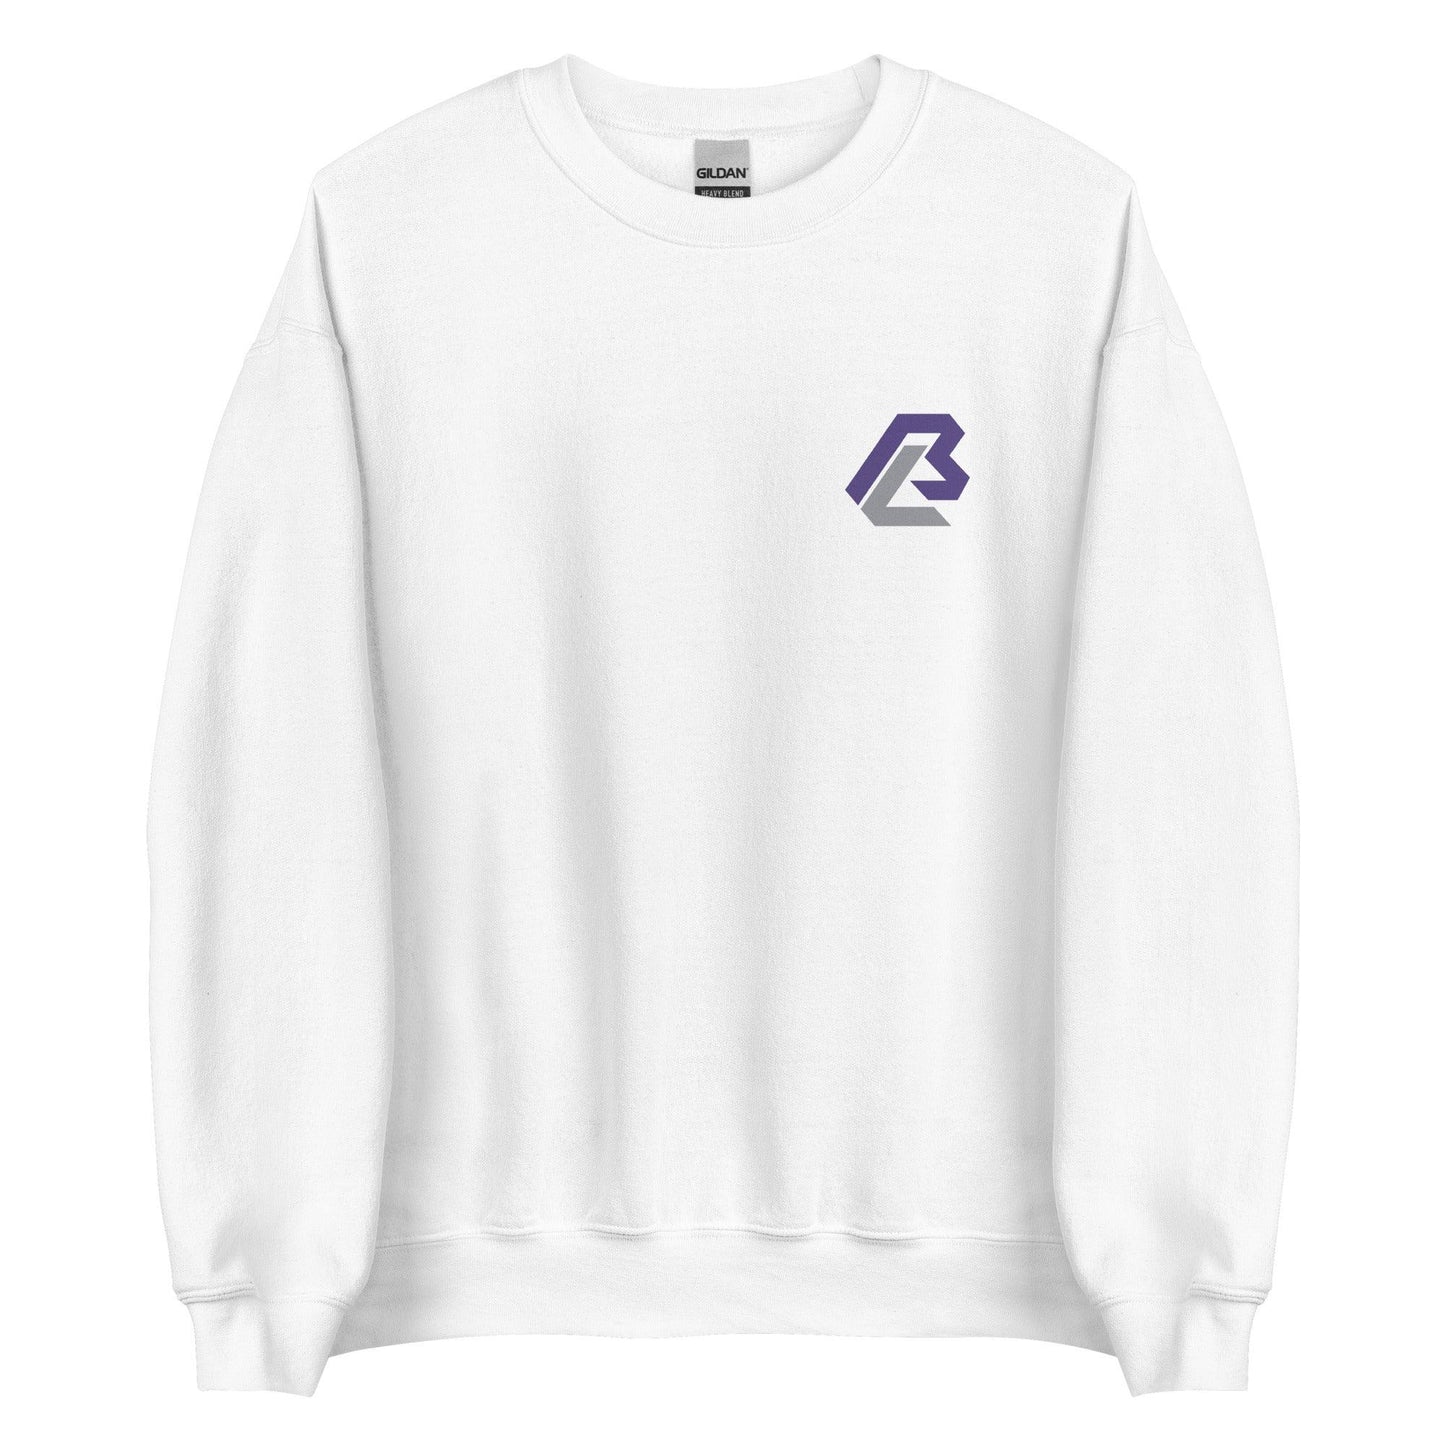 Bairon Ledesma "Essential" Sweatshirt - Fan Arch